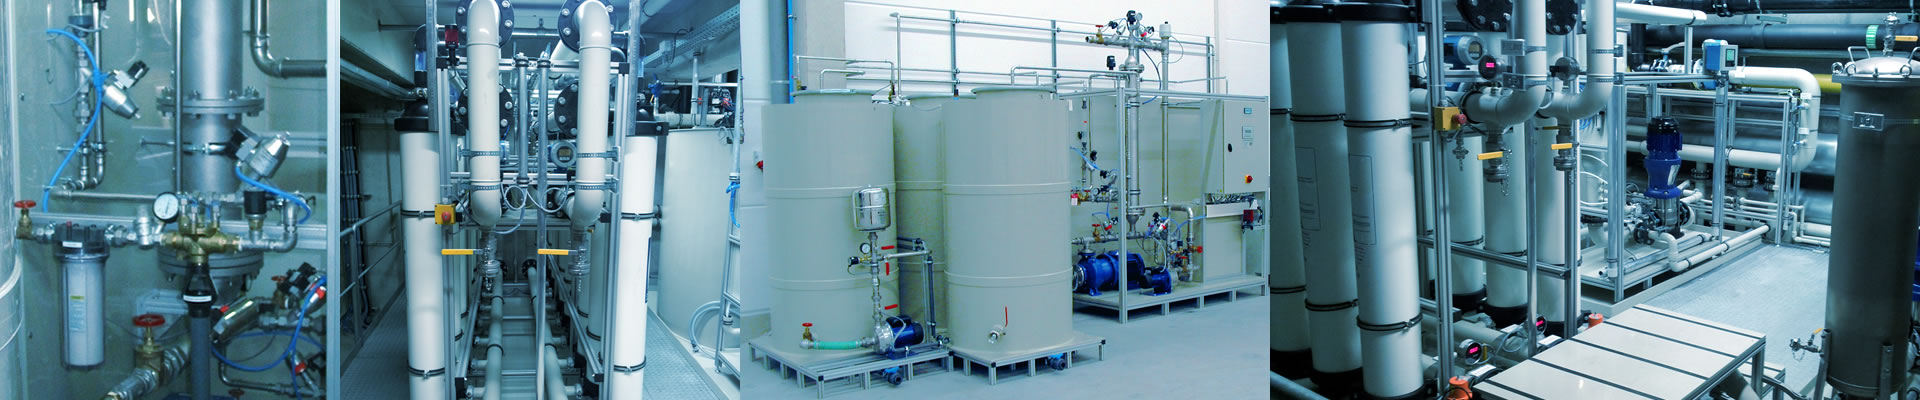 Ultrafiltration- & Mikrofiltrationanlagen, Membran-Trennverfahren zur Abscheidung von Makromolekülen und kleinen Partikeln sowie Suspensionen und Emulsionen